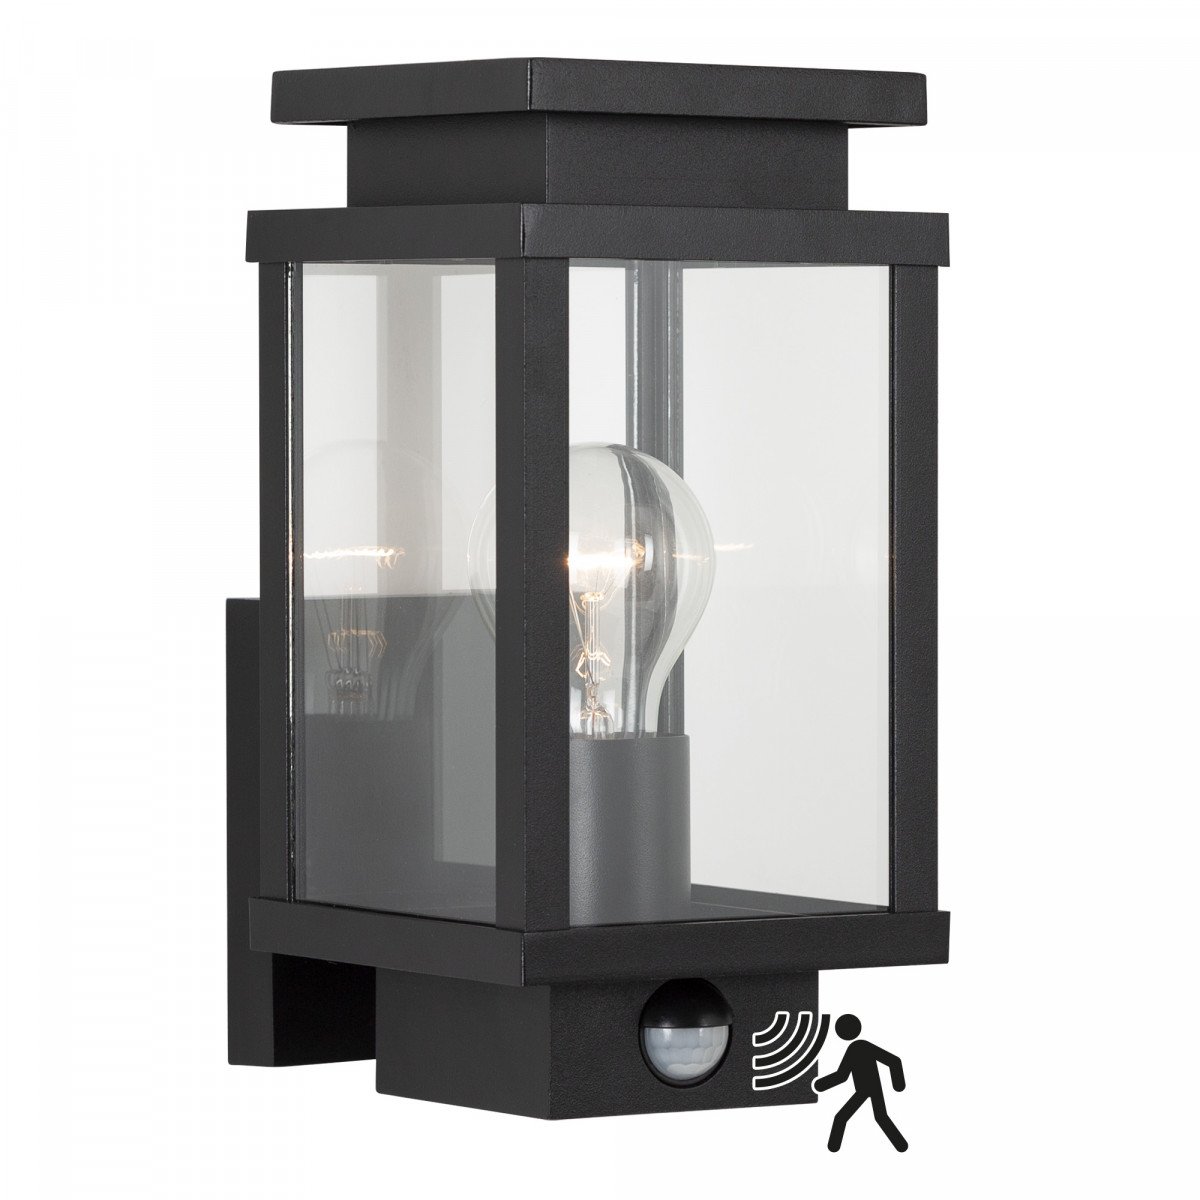 Schwarze Wandlampe mit quadratischer Form und Fenstern mit echtem Glas